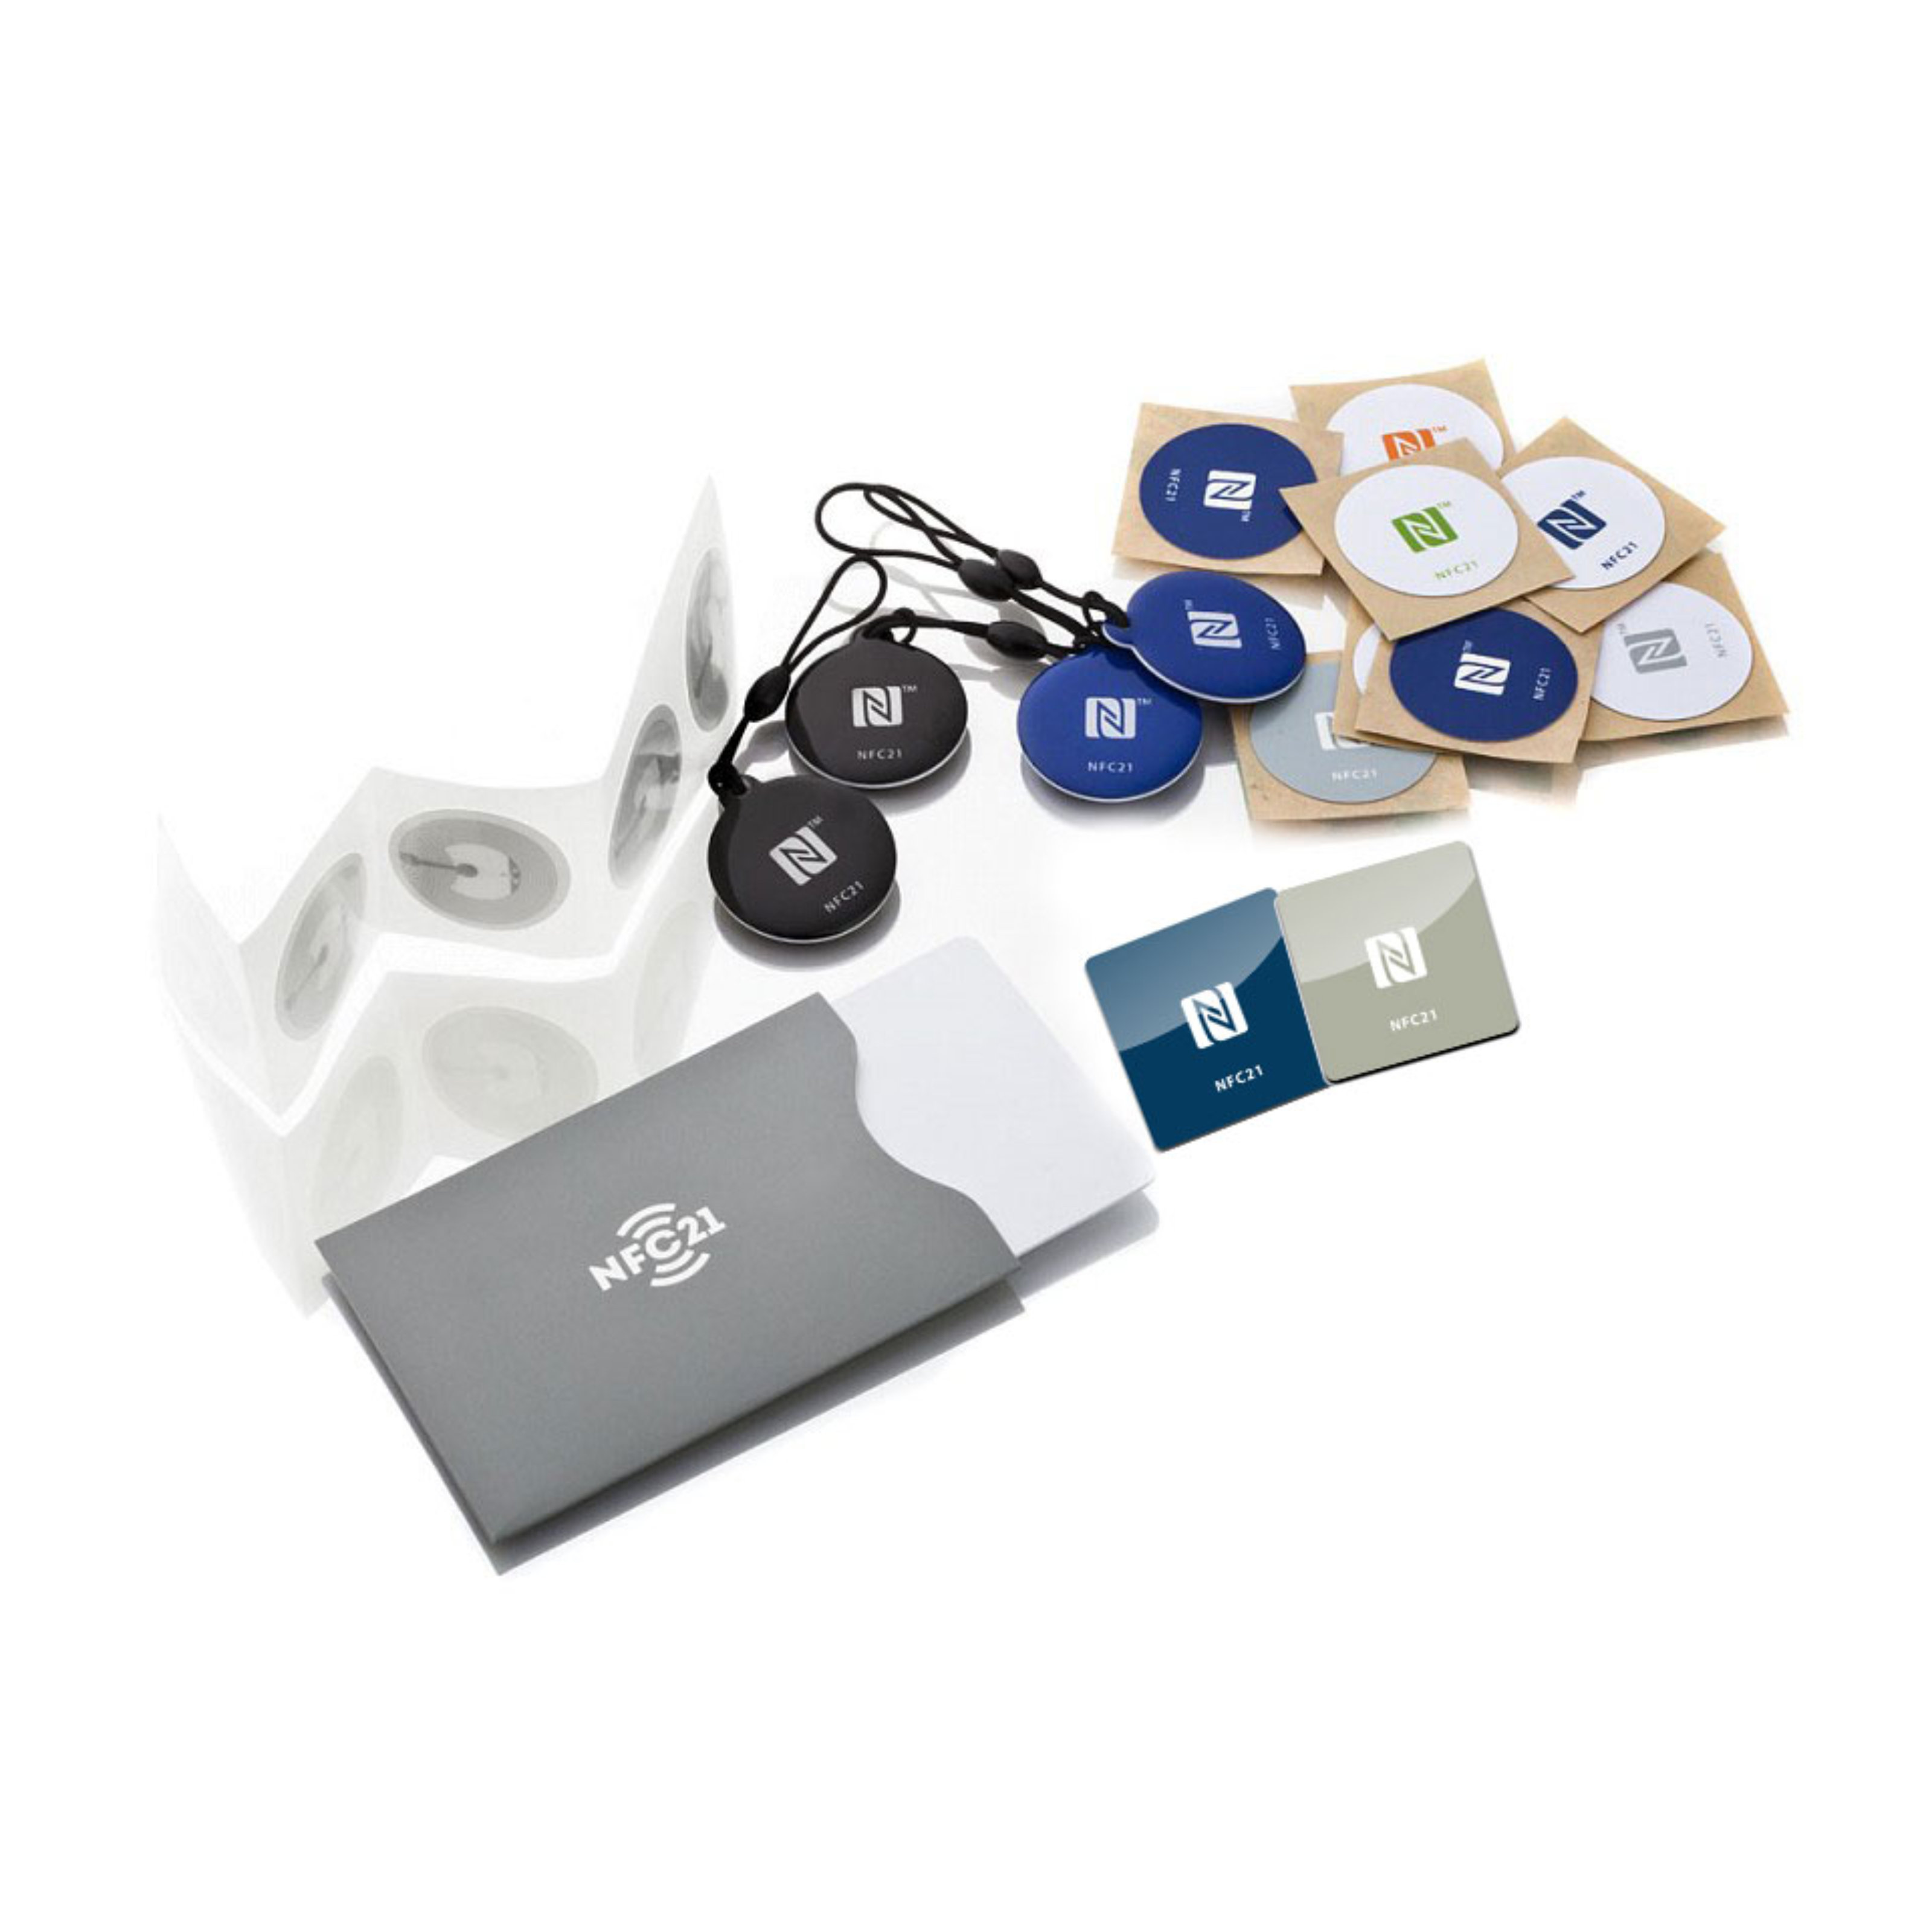 NFC Starter Kit Maxi - 21 pieces